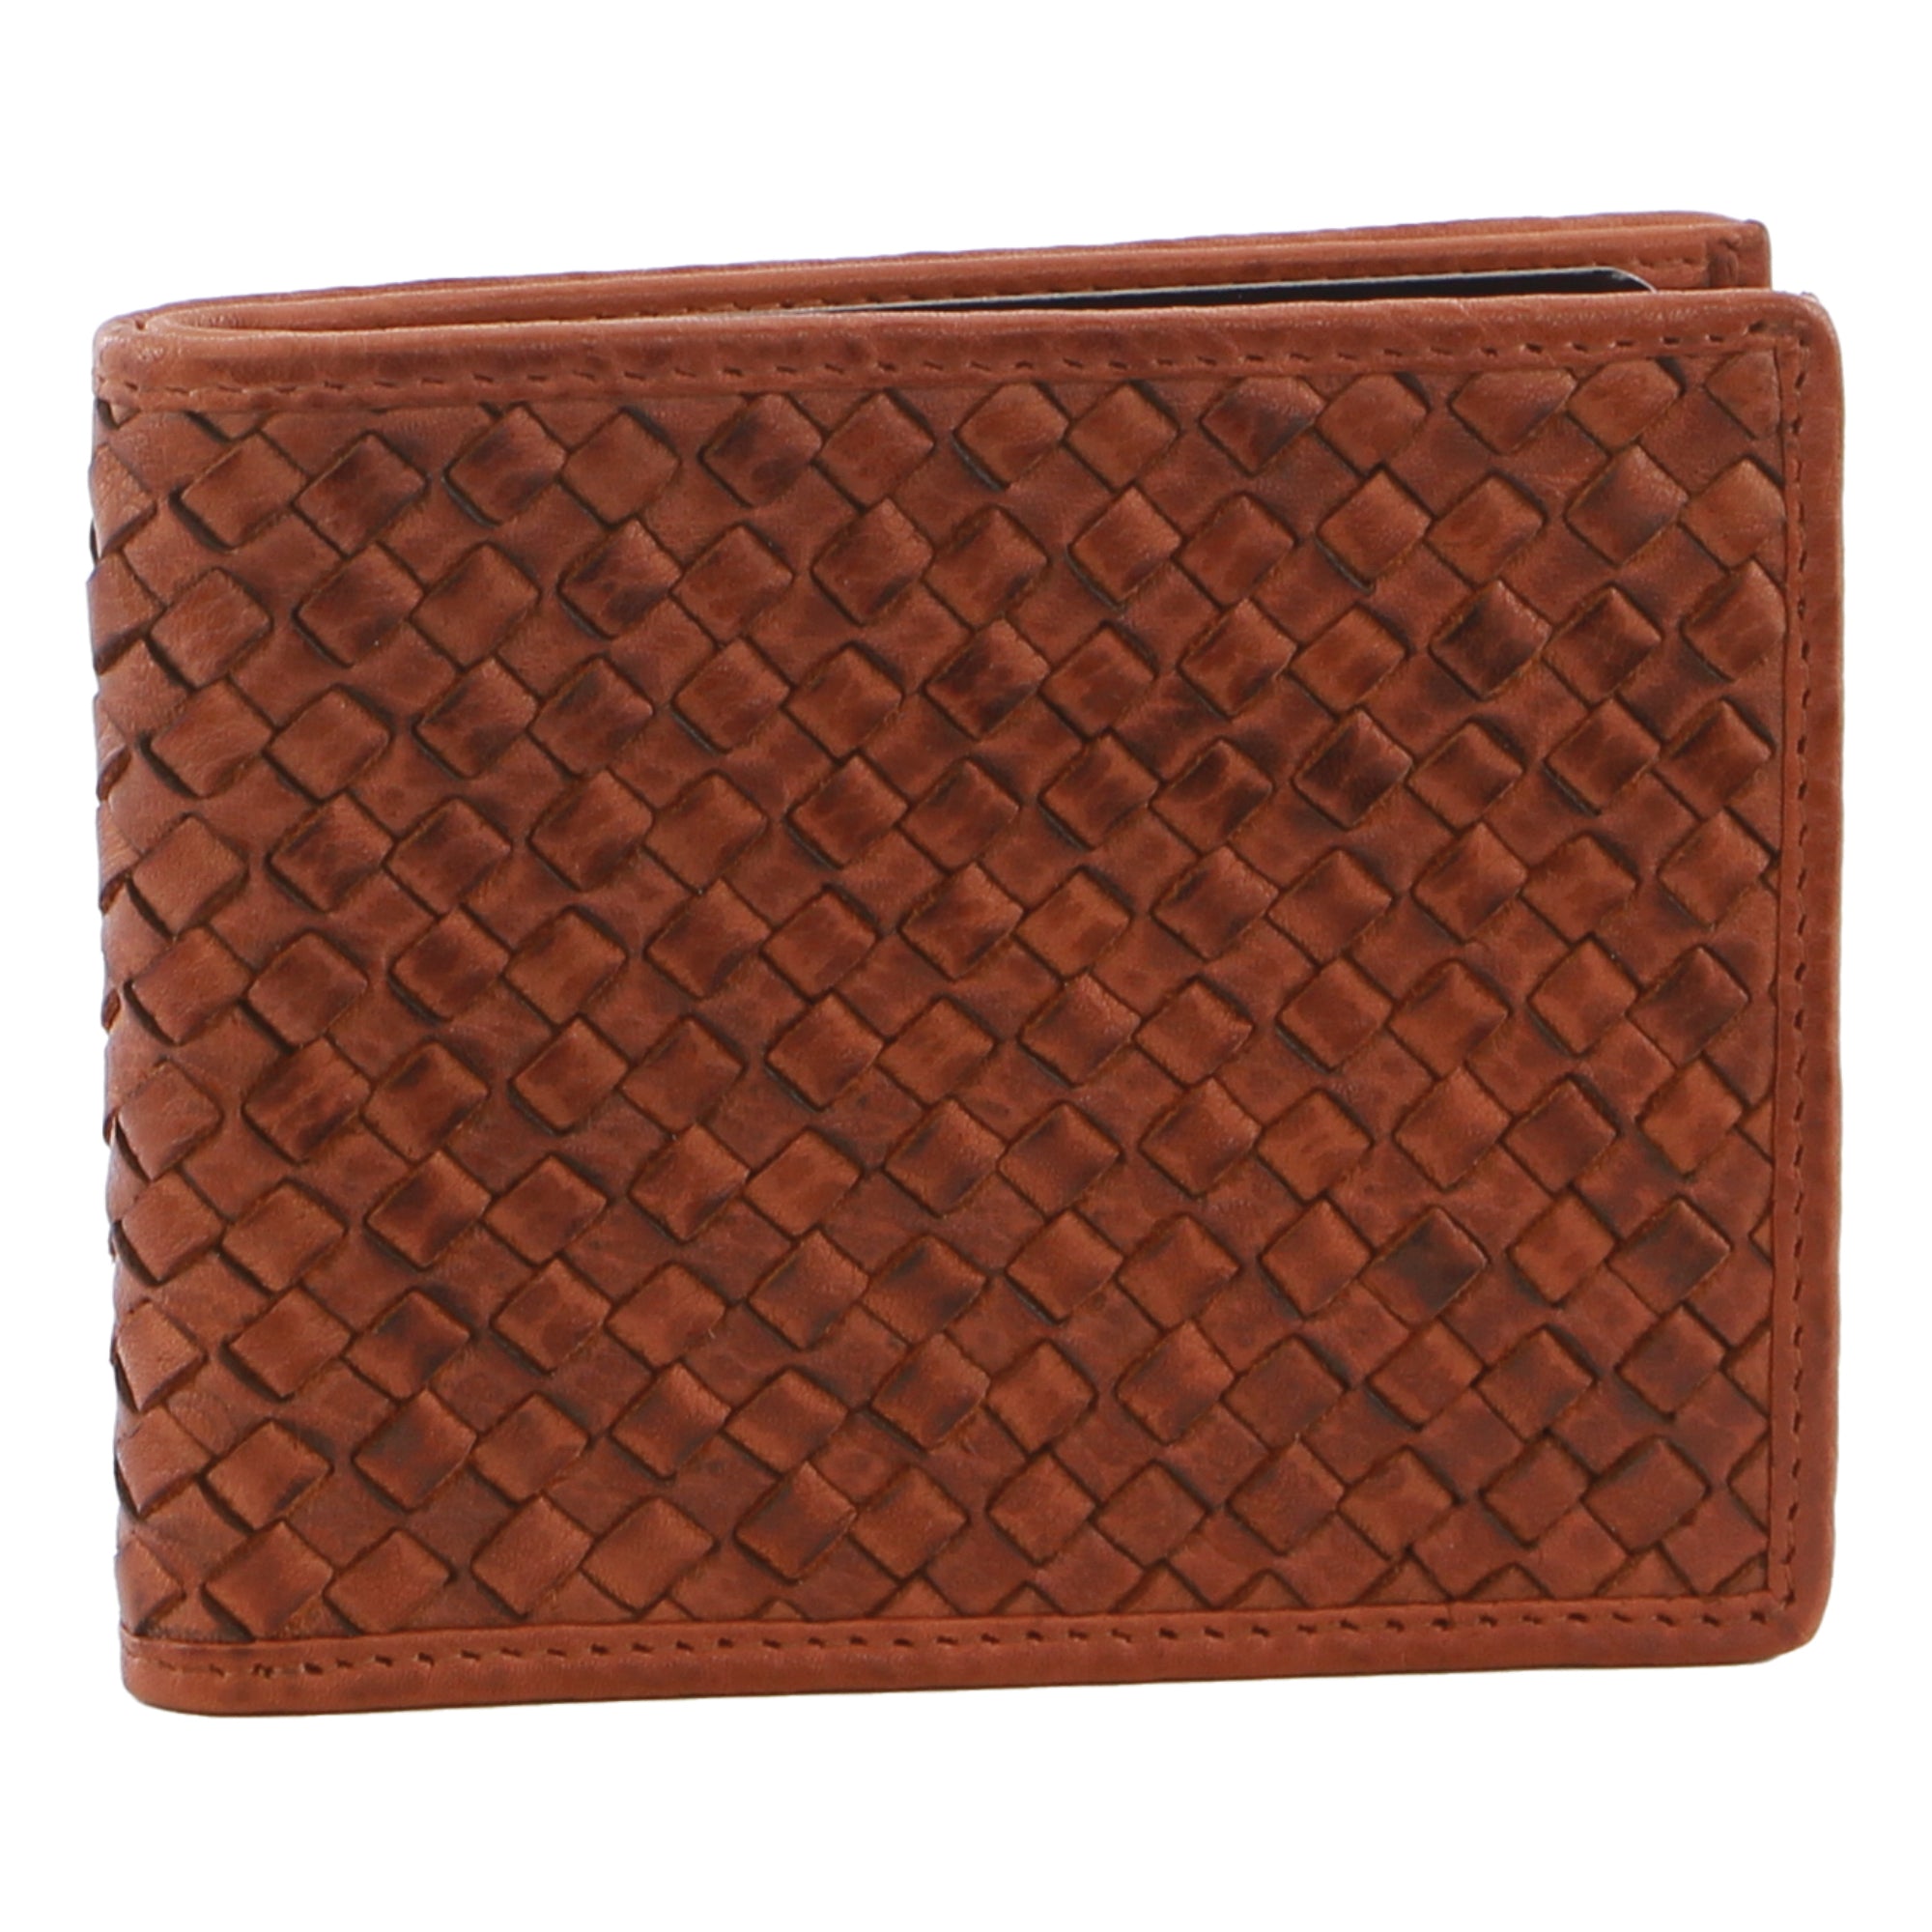 Pierre Cardin Woven Embossed Leather Bi-Fold Wallet in Cognac